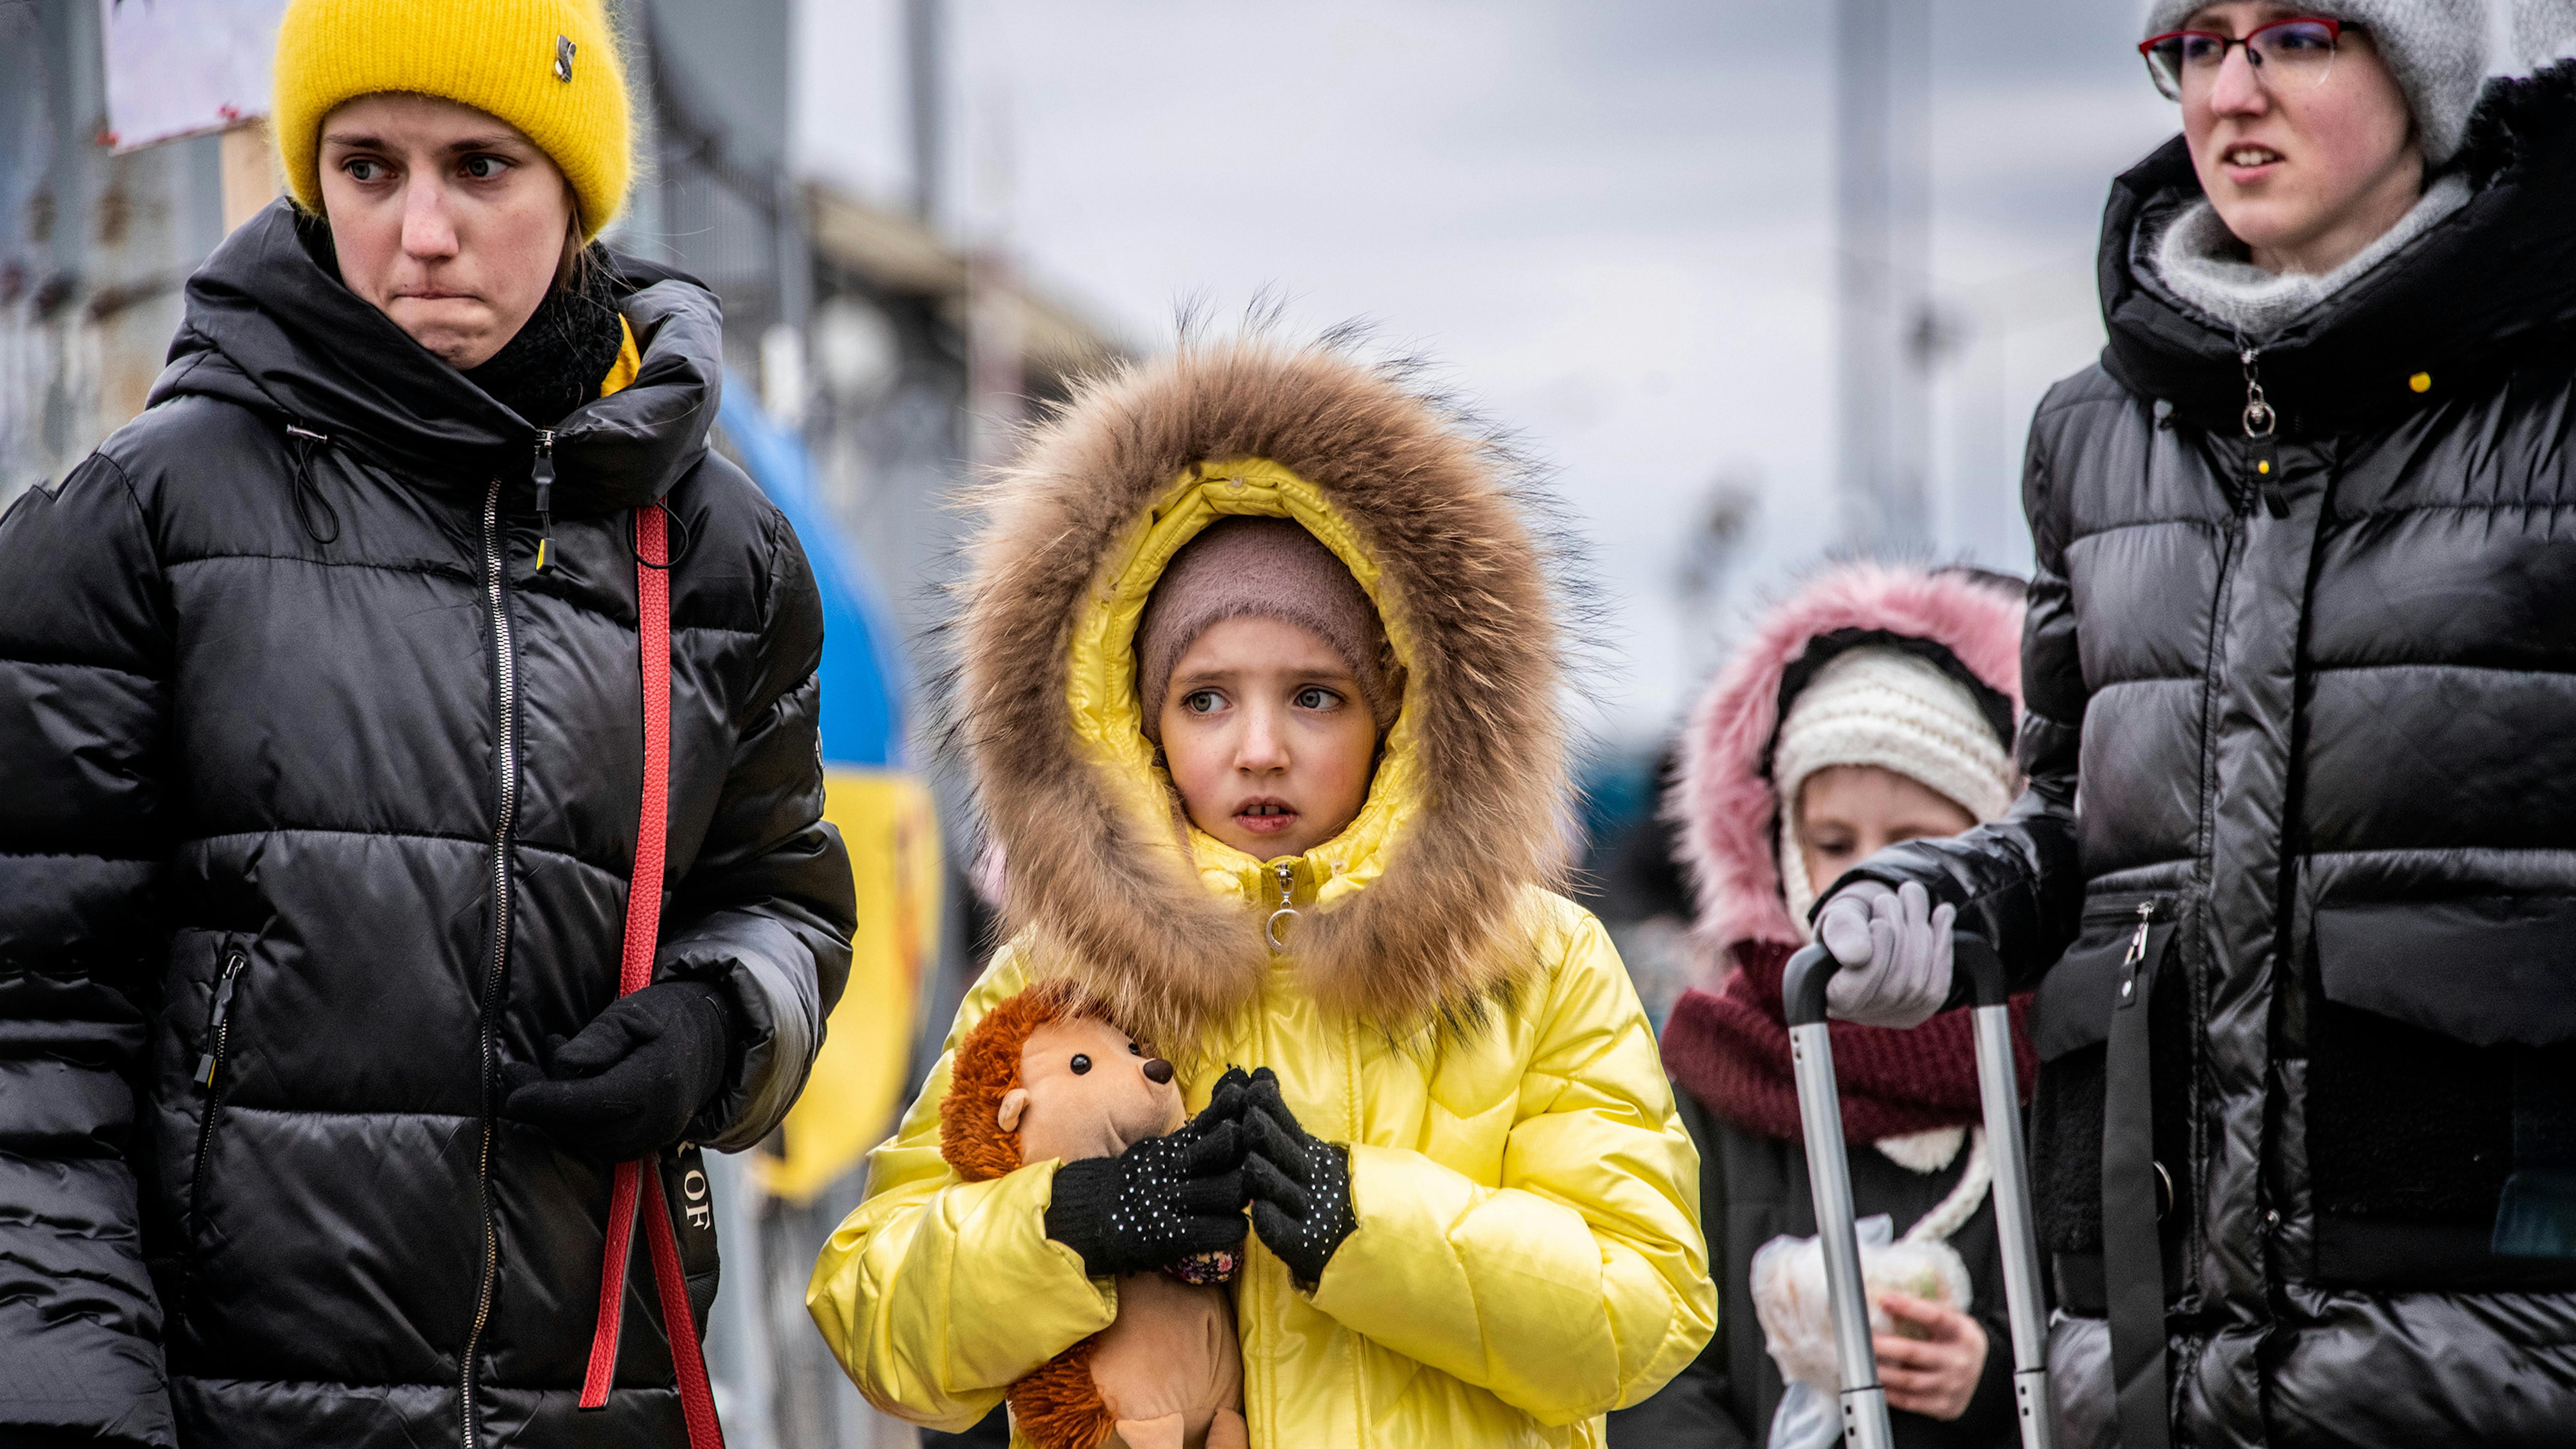 bambini e famiglie raggiungono Berdyszcze, in Polonia, dopo aver attraversato il confine dall'Ucraina, in fuga dall'escalation del conflitto.